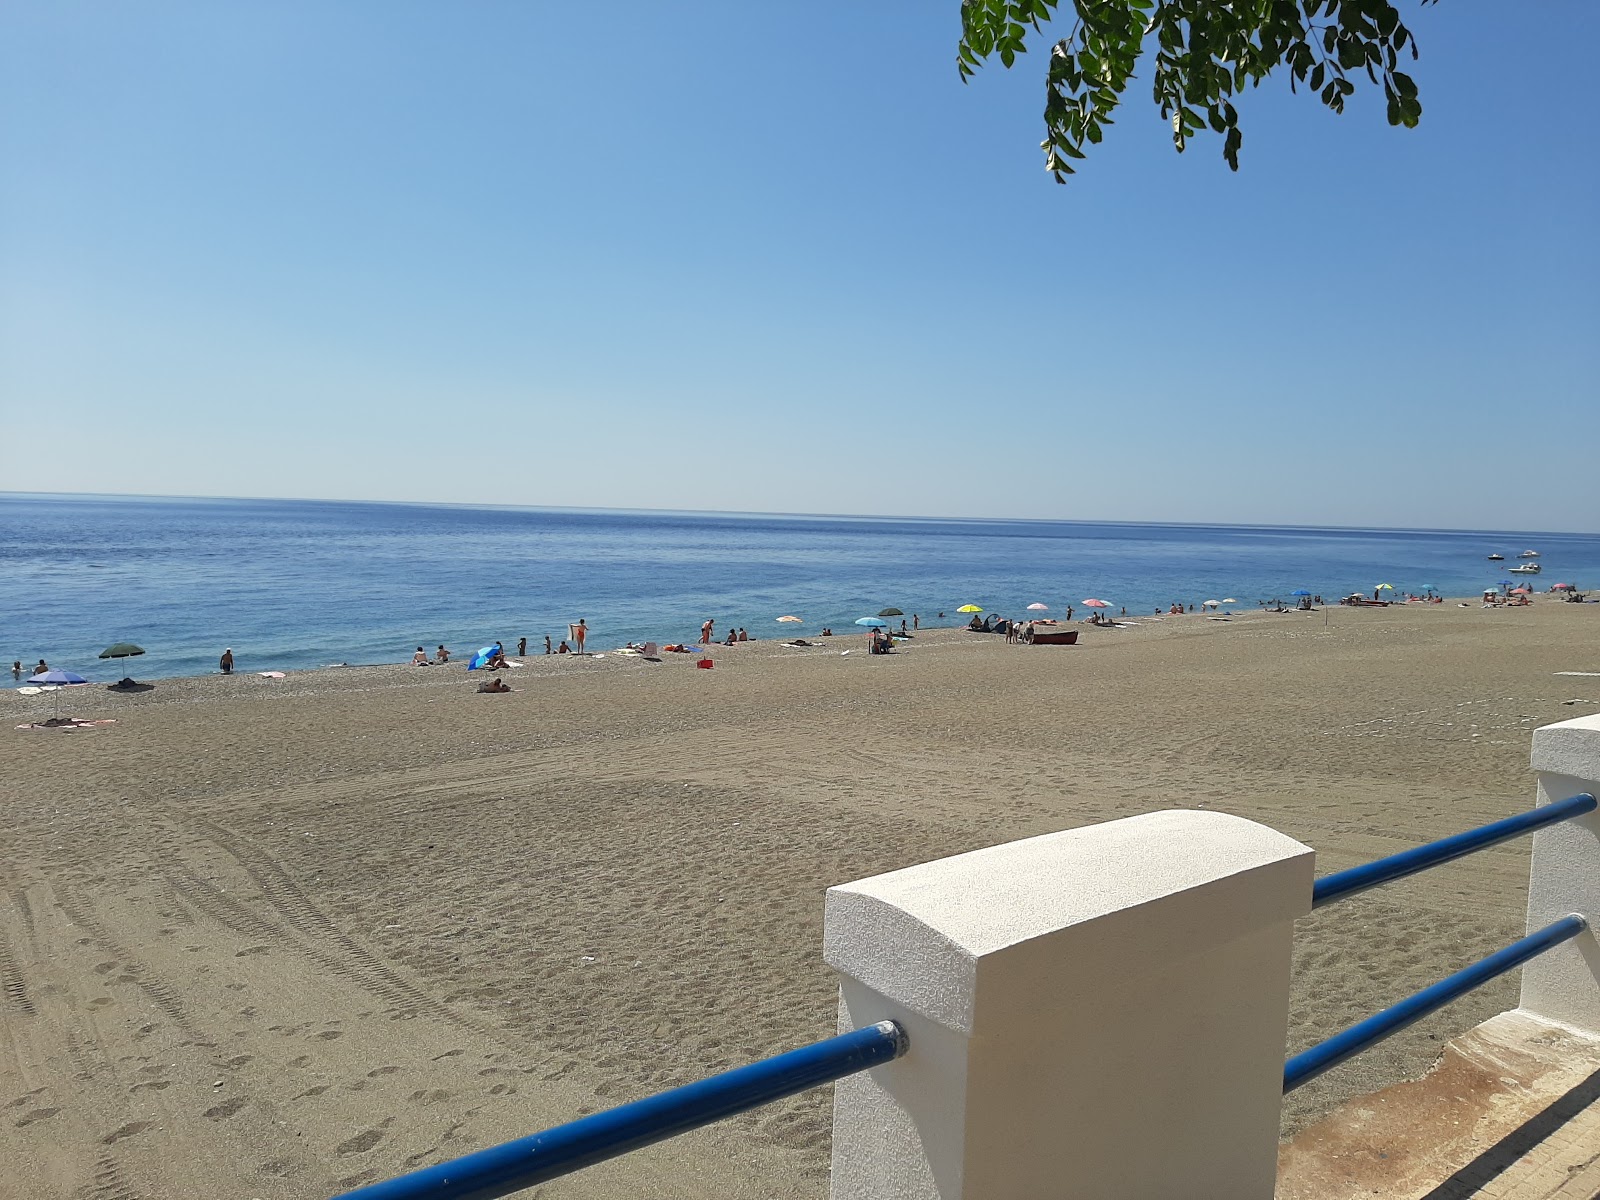 Ali Terme beach'in fotoğrafı ve yerleşim